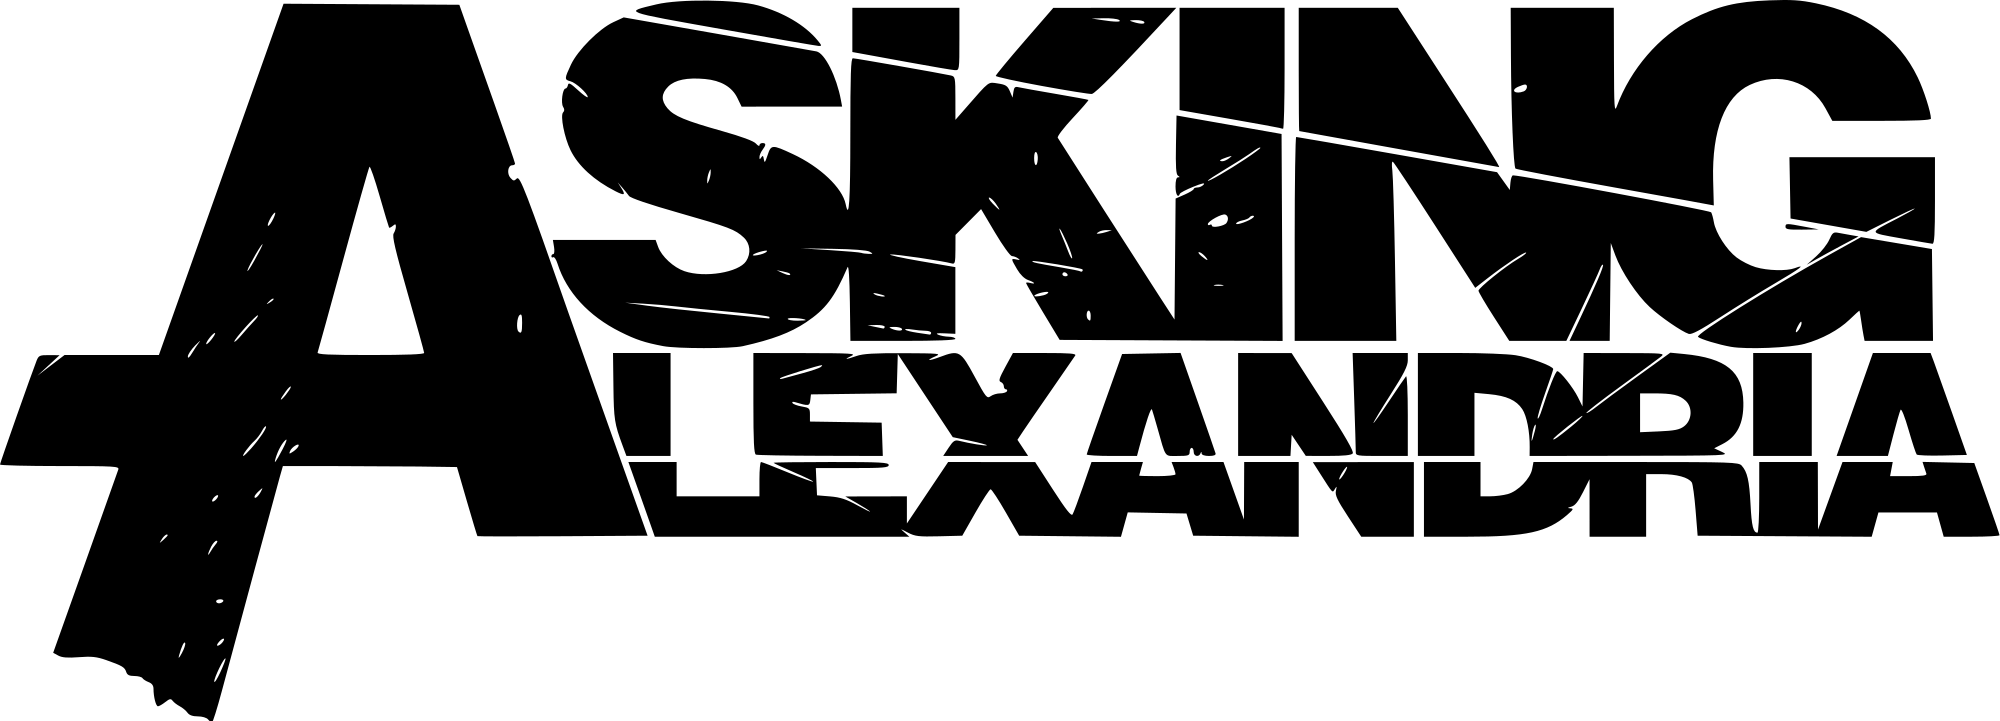 Asking Alexandria Logo - Asking Alexandria logo.svg